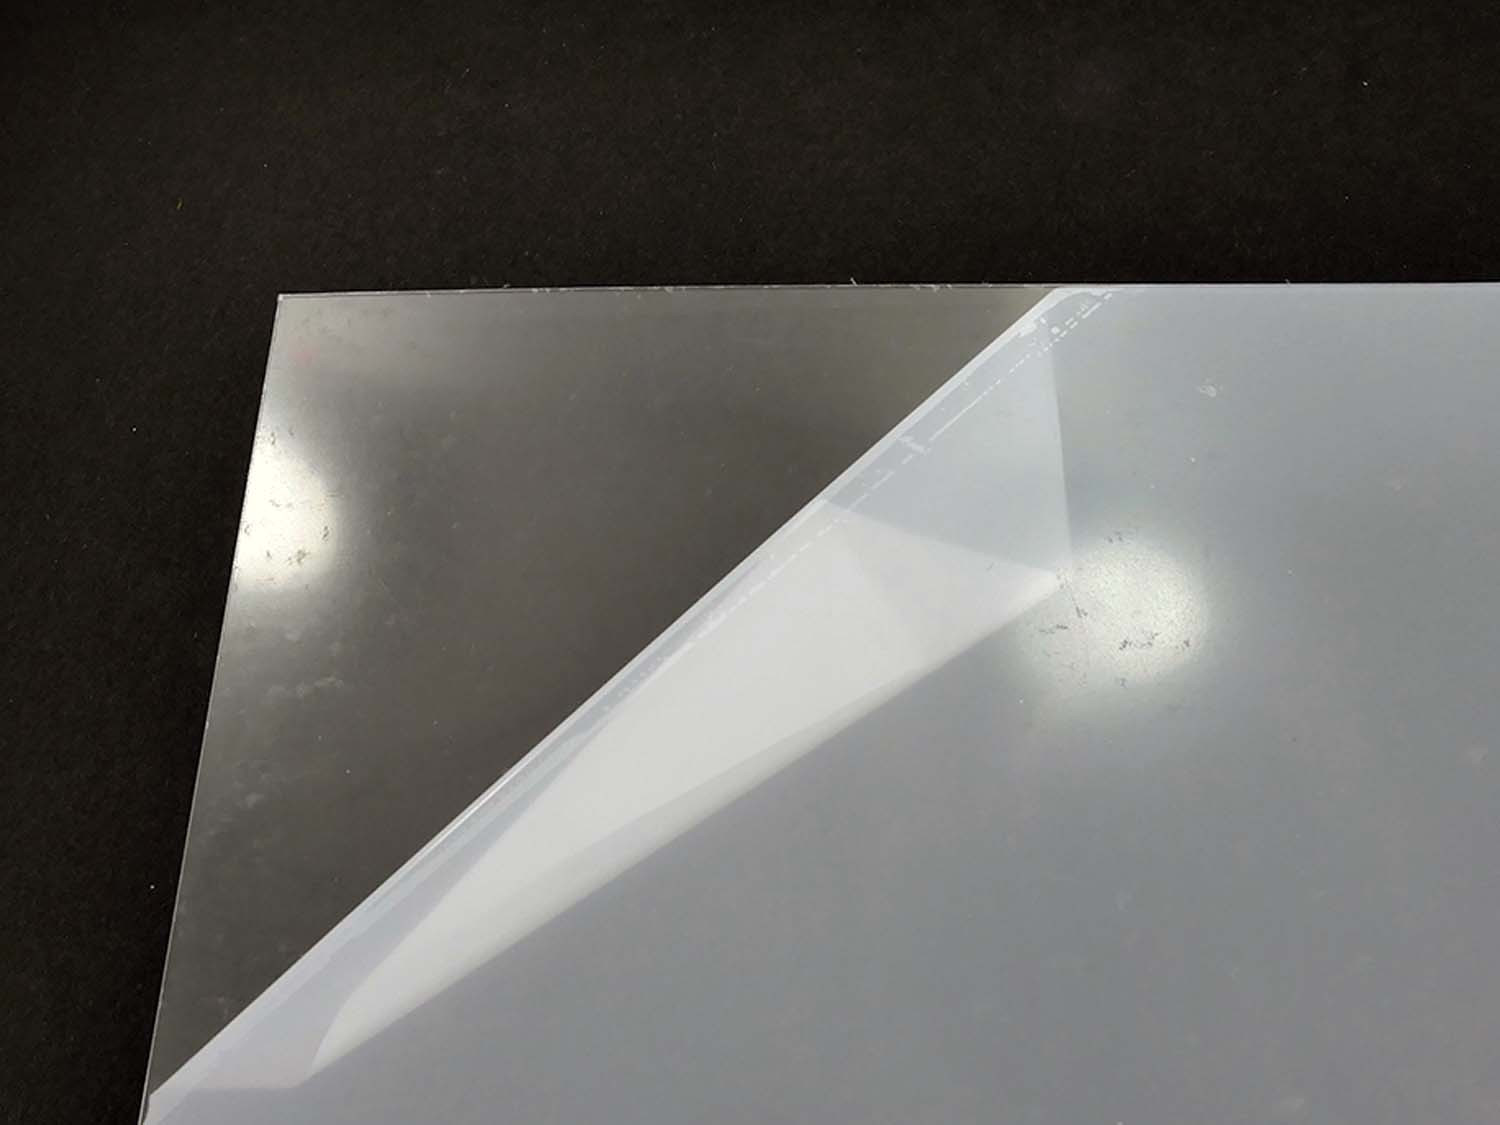 Plastiglaz Sheet 1.00mm (0.040'') 297x210mm Clear